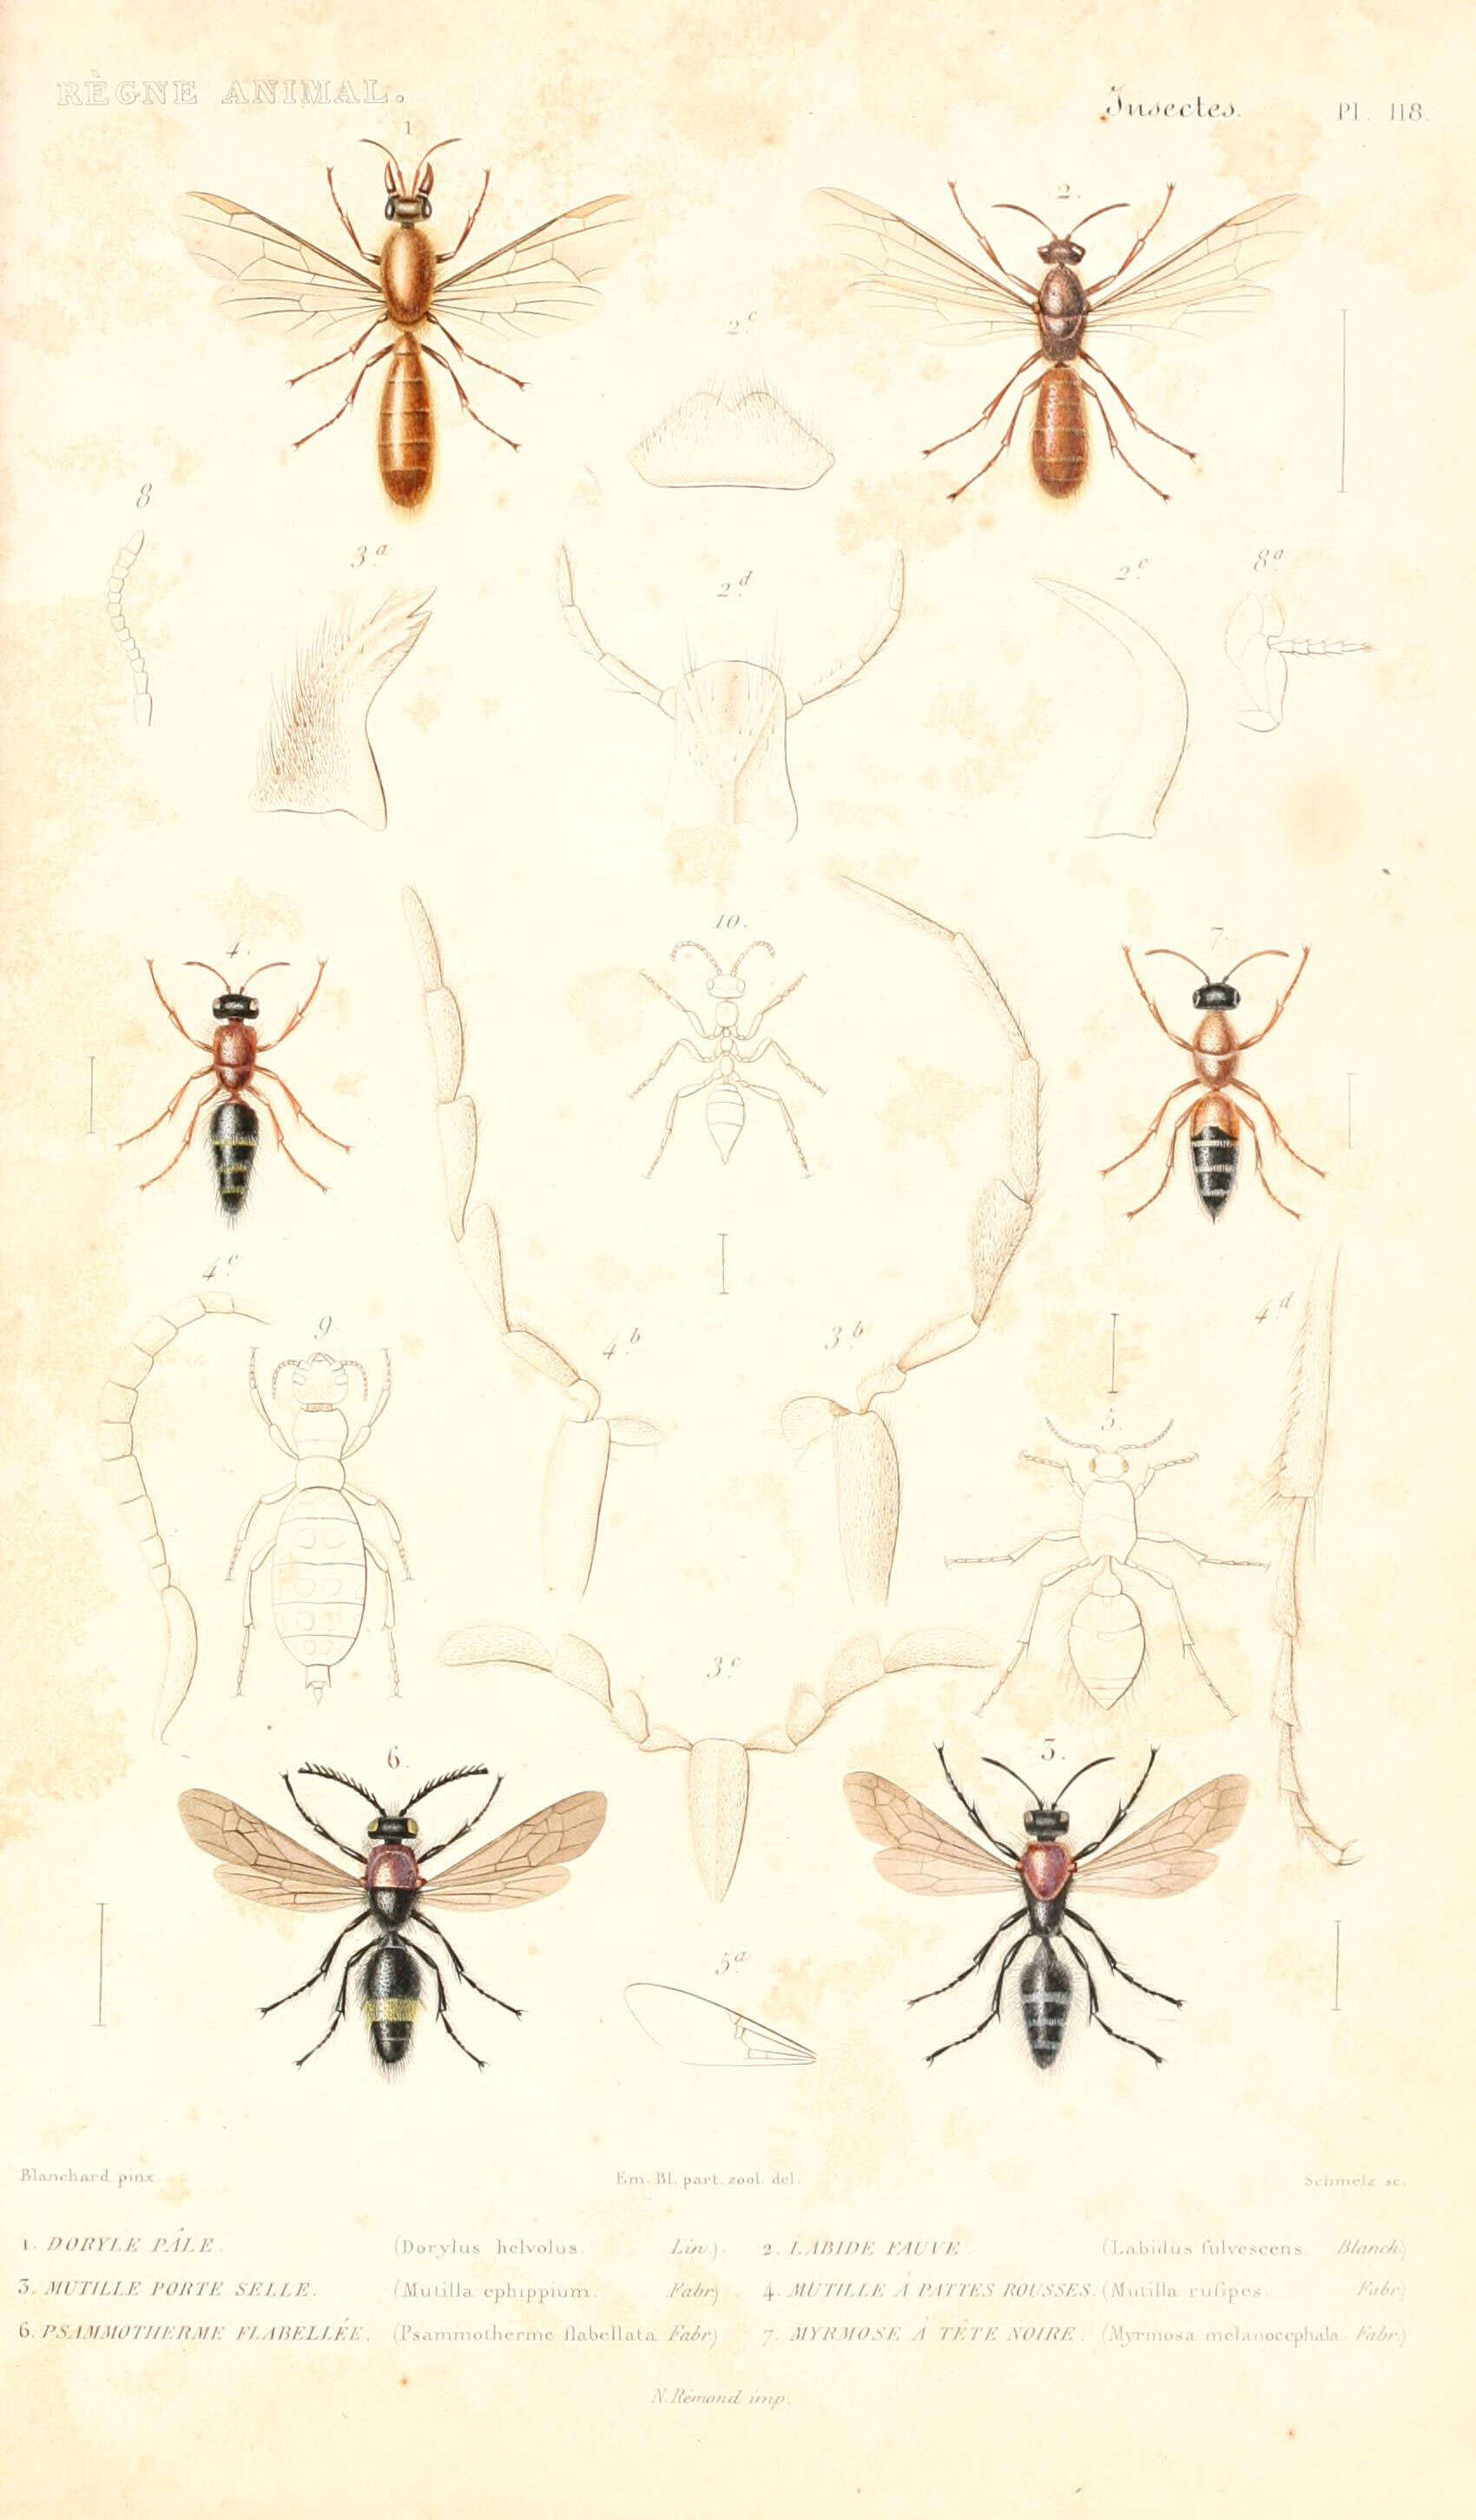 Image de Dorylus helvolus (Linnaeus 1764)